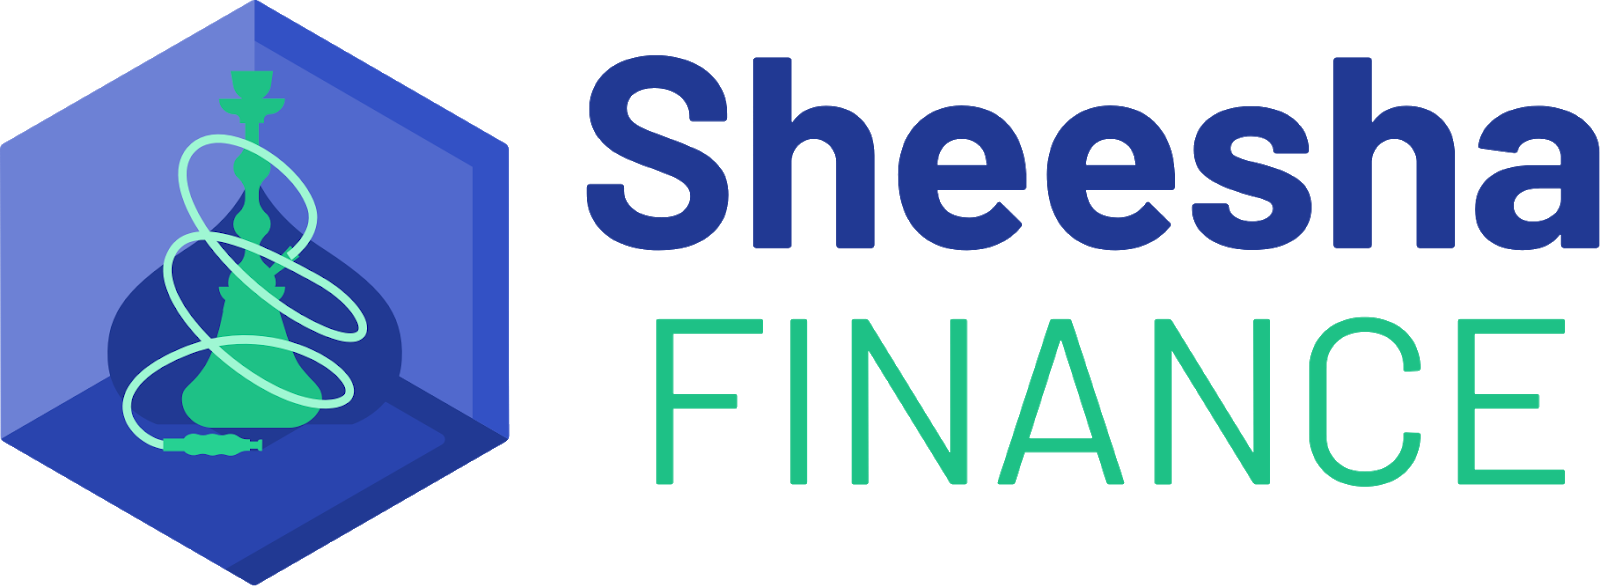 Sheesha Finance Logo.png